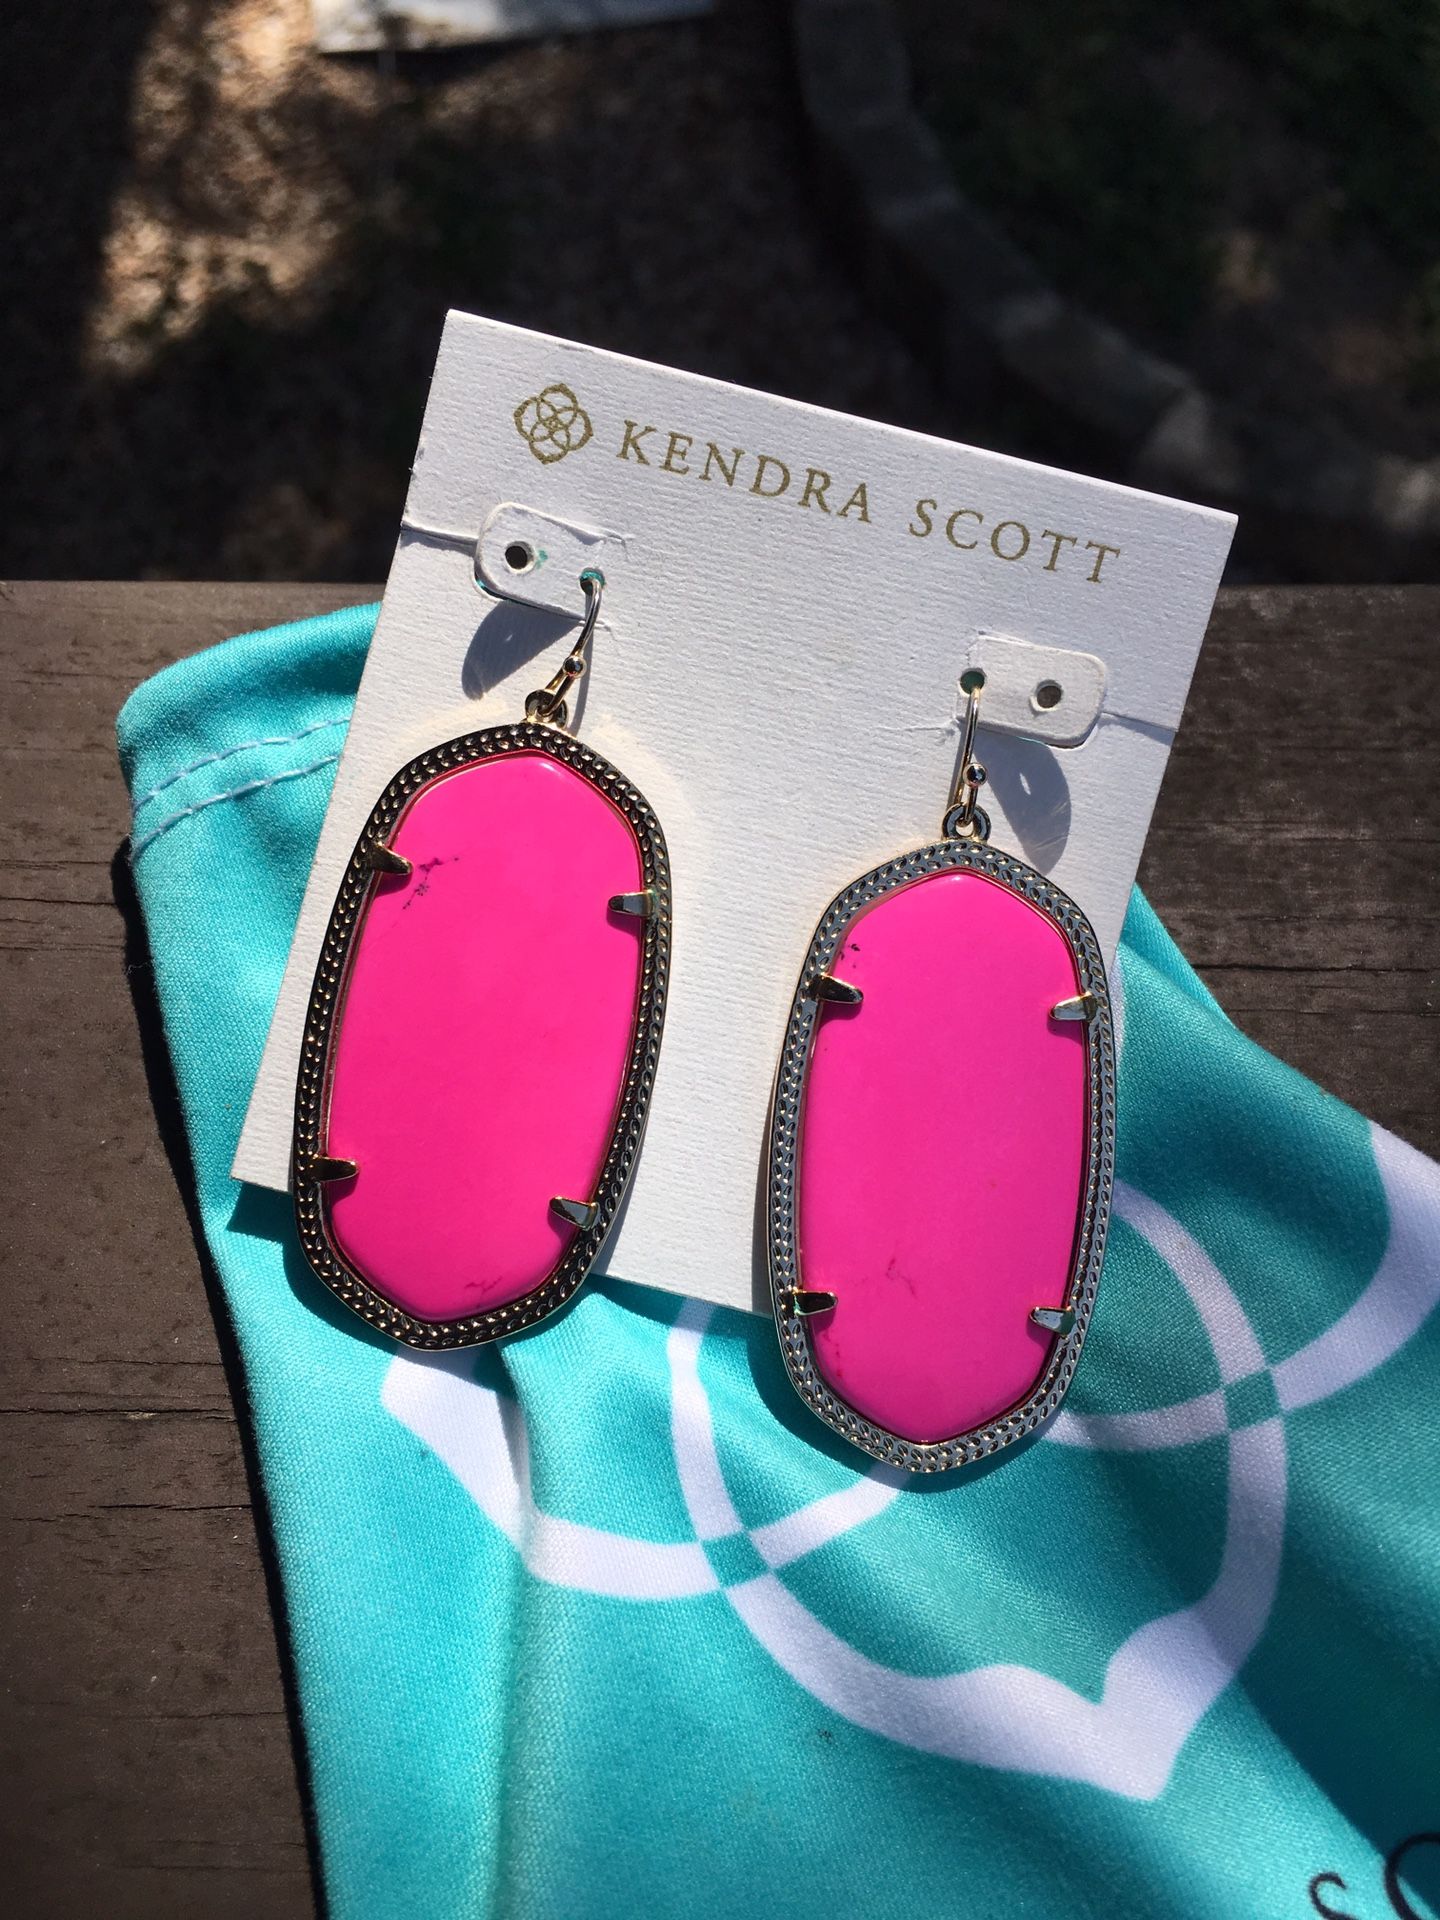 Kendra Scott Danielles earrings in bright pink!!!